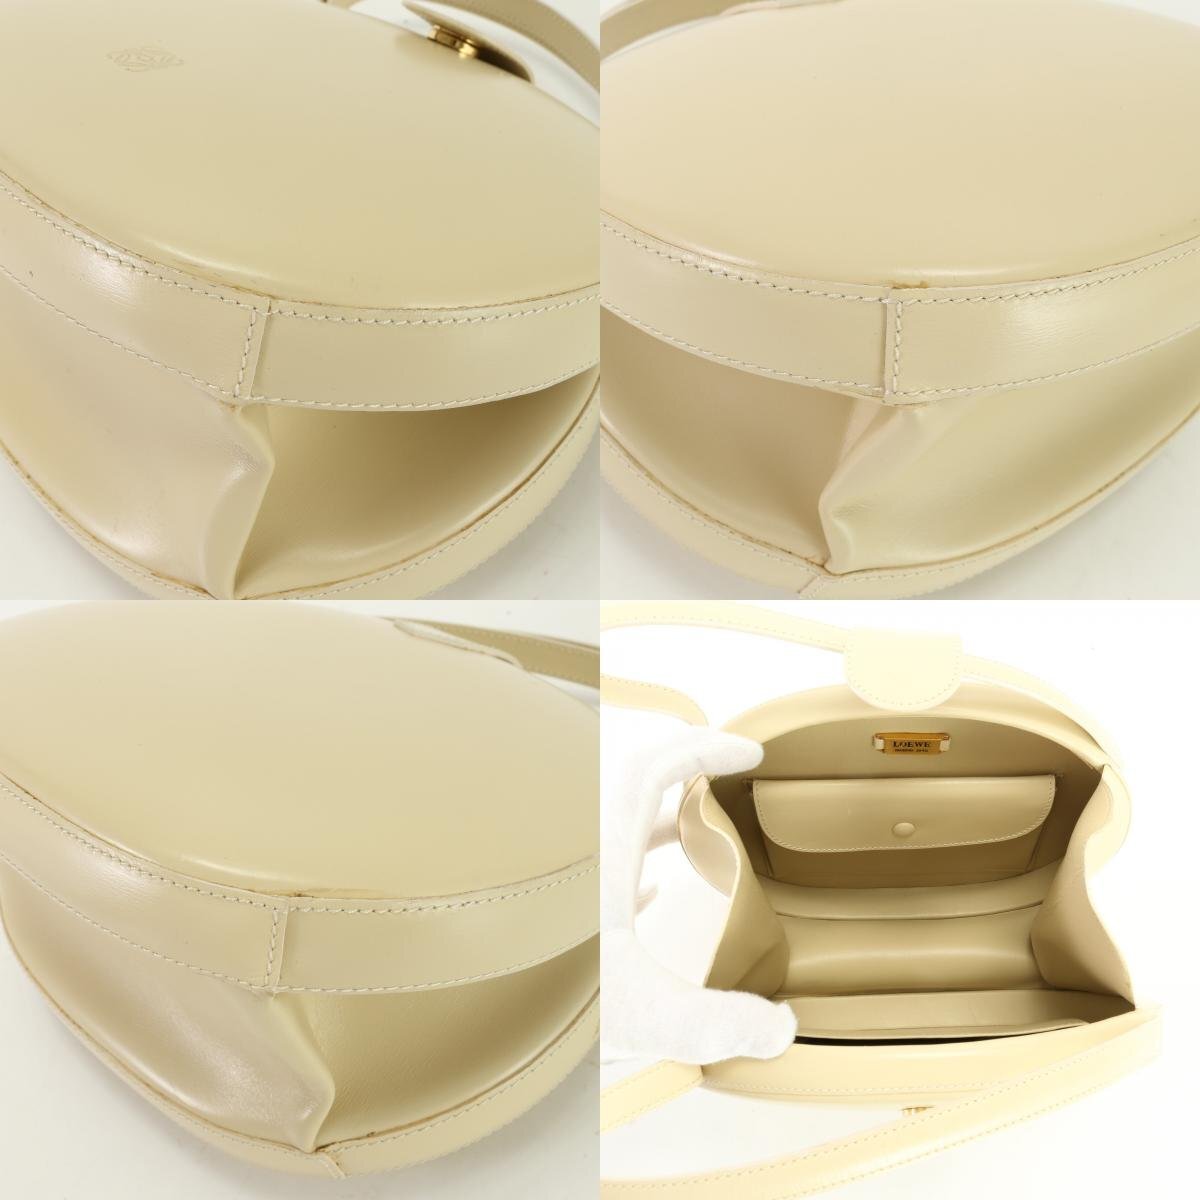 1 иен # превосходный товар # Vintage # Loewe # кожа # ручная сумочка # большая сумка популярный стандартный модный vanity плечо женский EET 2.10-2